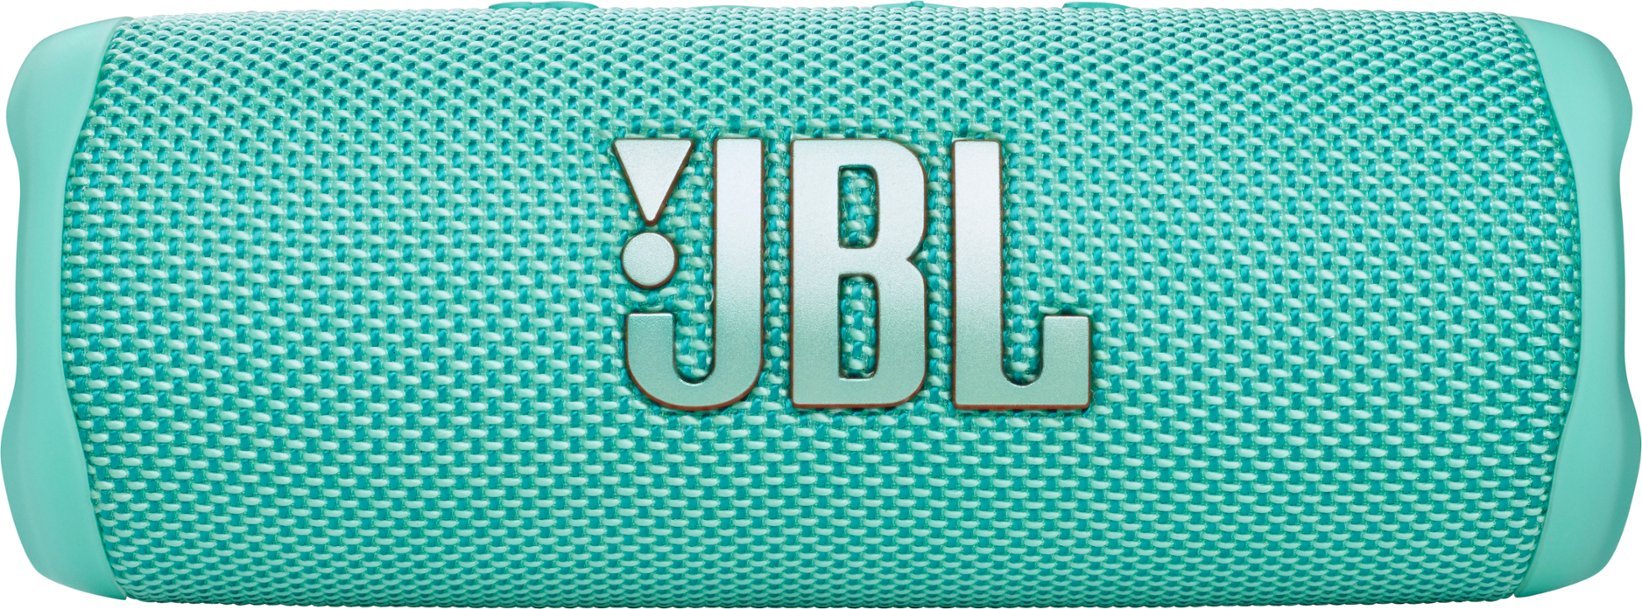 JBL FLIP 6 Portable IP67 Waterproof Wireless Bluetooth Speaker - GT - Teal (Certified Refurbished)